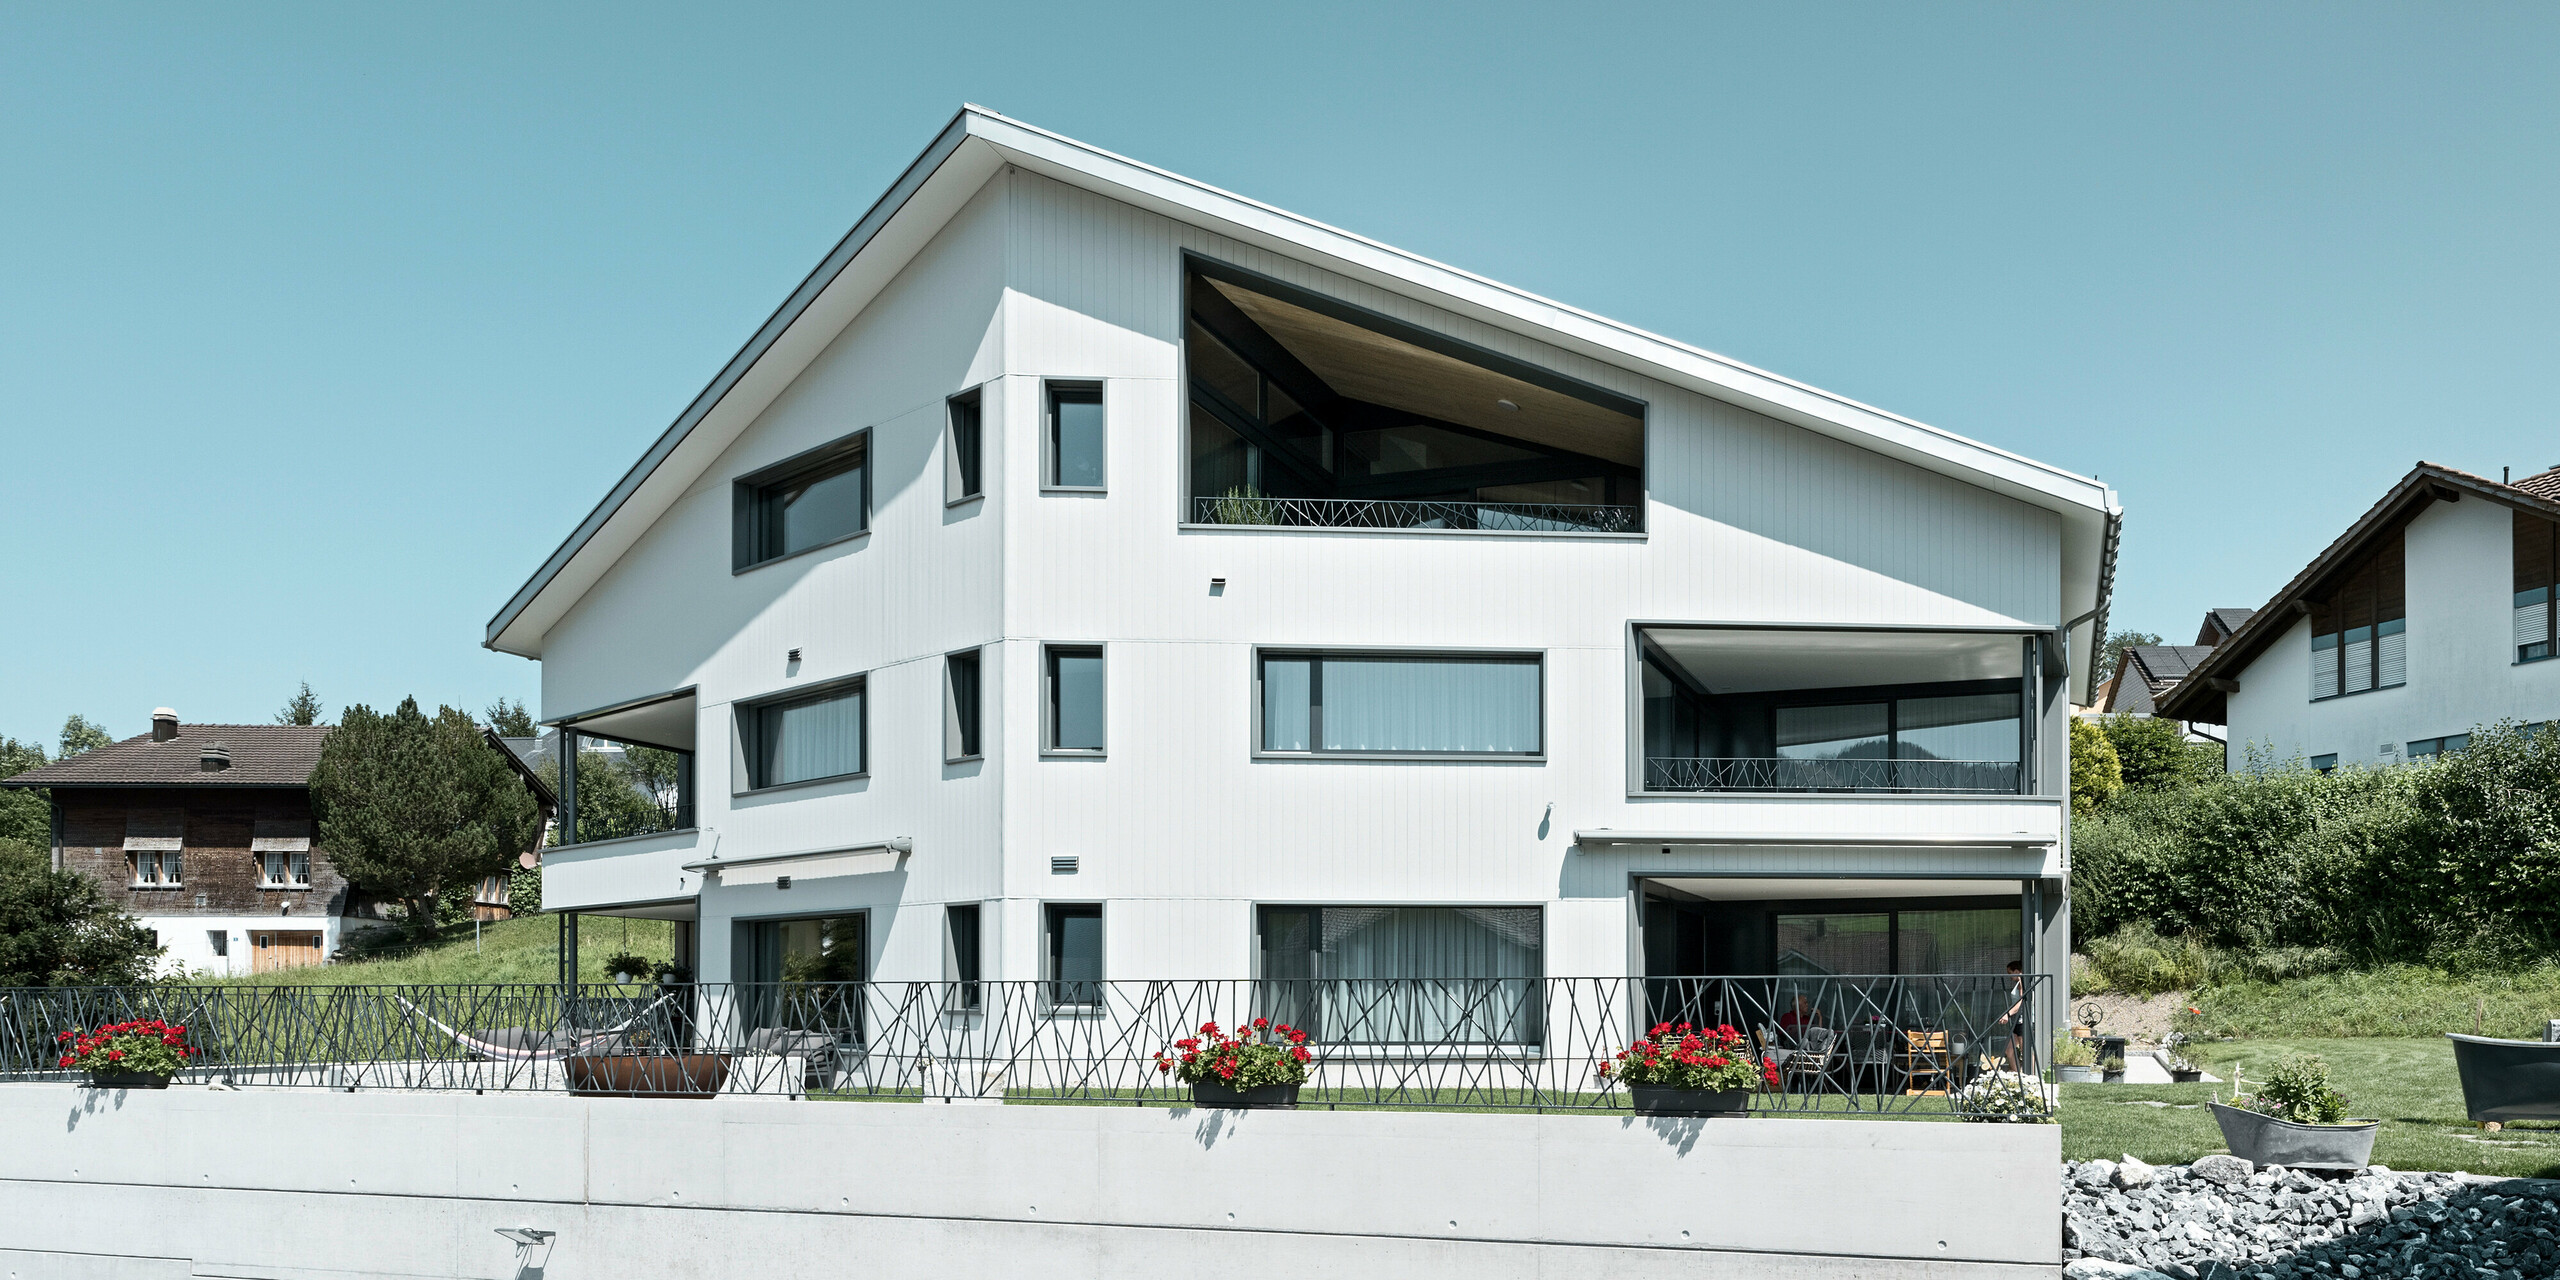 Das Bild zeigt ein Mehrfamilienhaus in Weissbad, Schweiz, das mit einer strahlend weißen PREFA Aluminiumfassade in P.10 Prefaweiß verkleidet ist. Die vertikale Ausrichtung der PREFA Sidings verleiht dem Gebäude eine elegante Textur und ein zeitgenössisches Flair. Die großzügigen Balkone und die weiten Fensteröffnungen sind harmonisch in das Fassadendesign integriert, wodurch eine ästhetische Symbiose aus Form und Funktion entsteht, die sowohl modern als auch einladend wirkt.